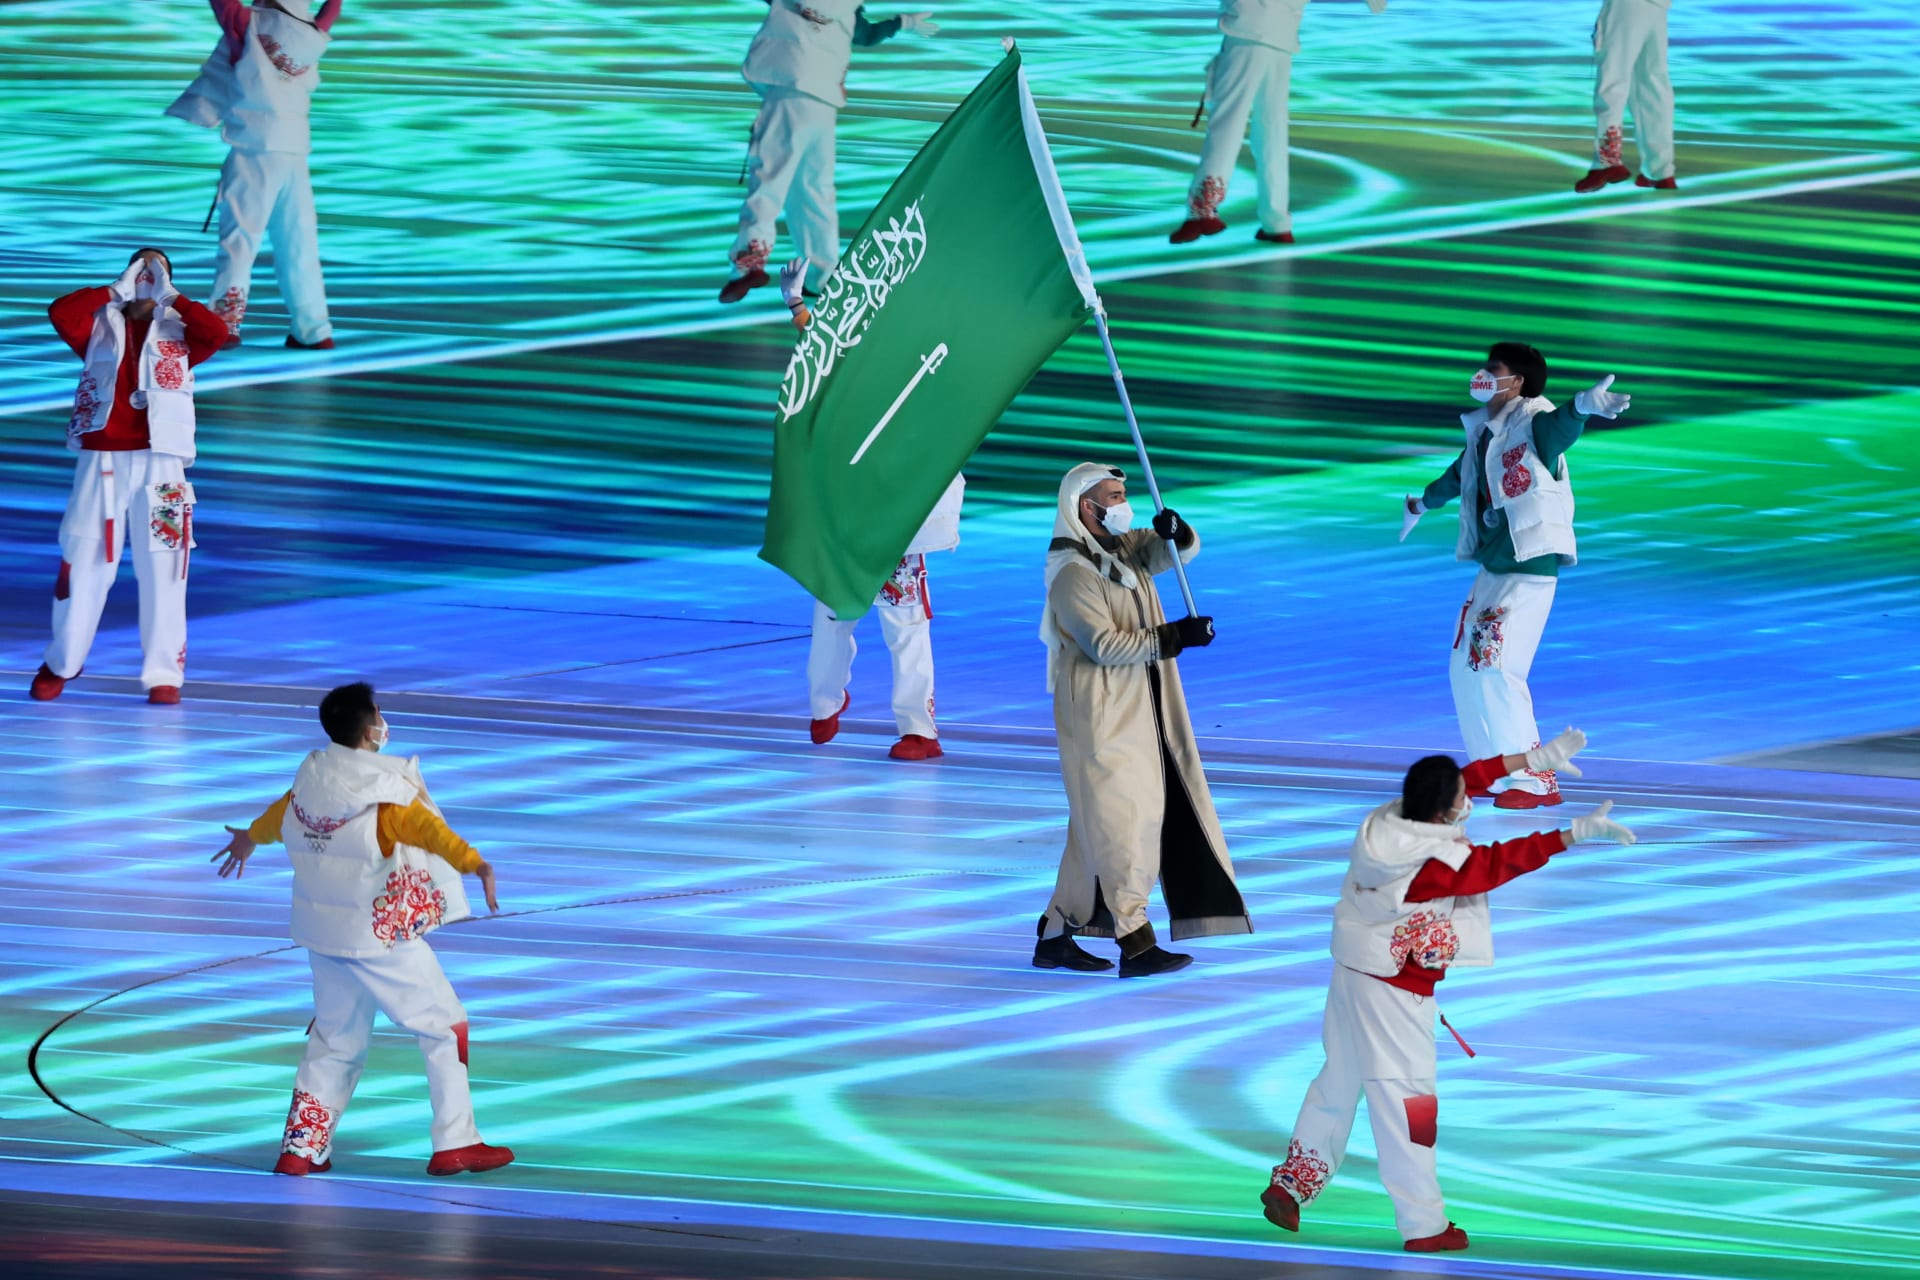 沙特阿拉伯只有一名选手参加冬奥会……他就是法伊克·阿贝迪 (Faiq Abedi)